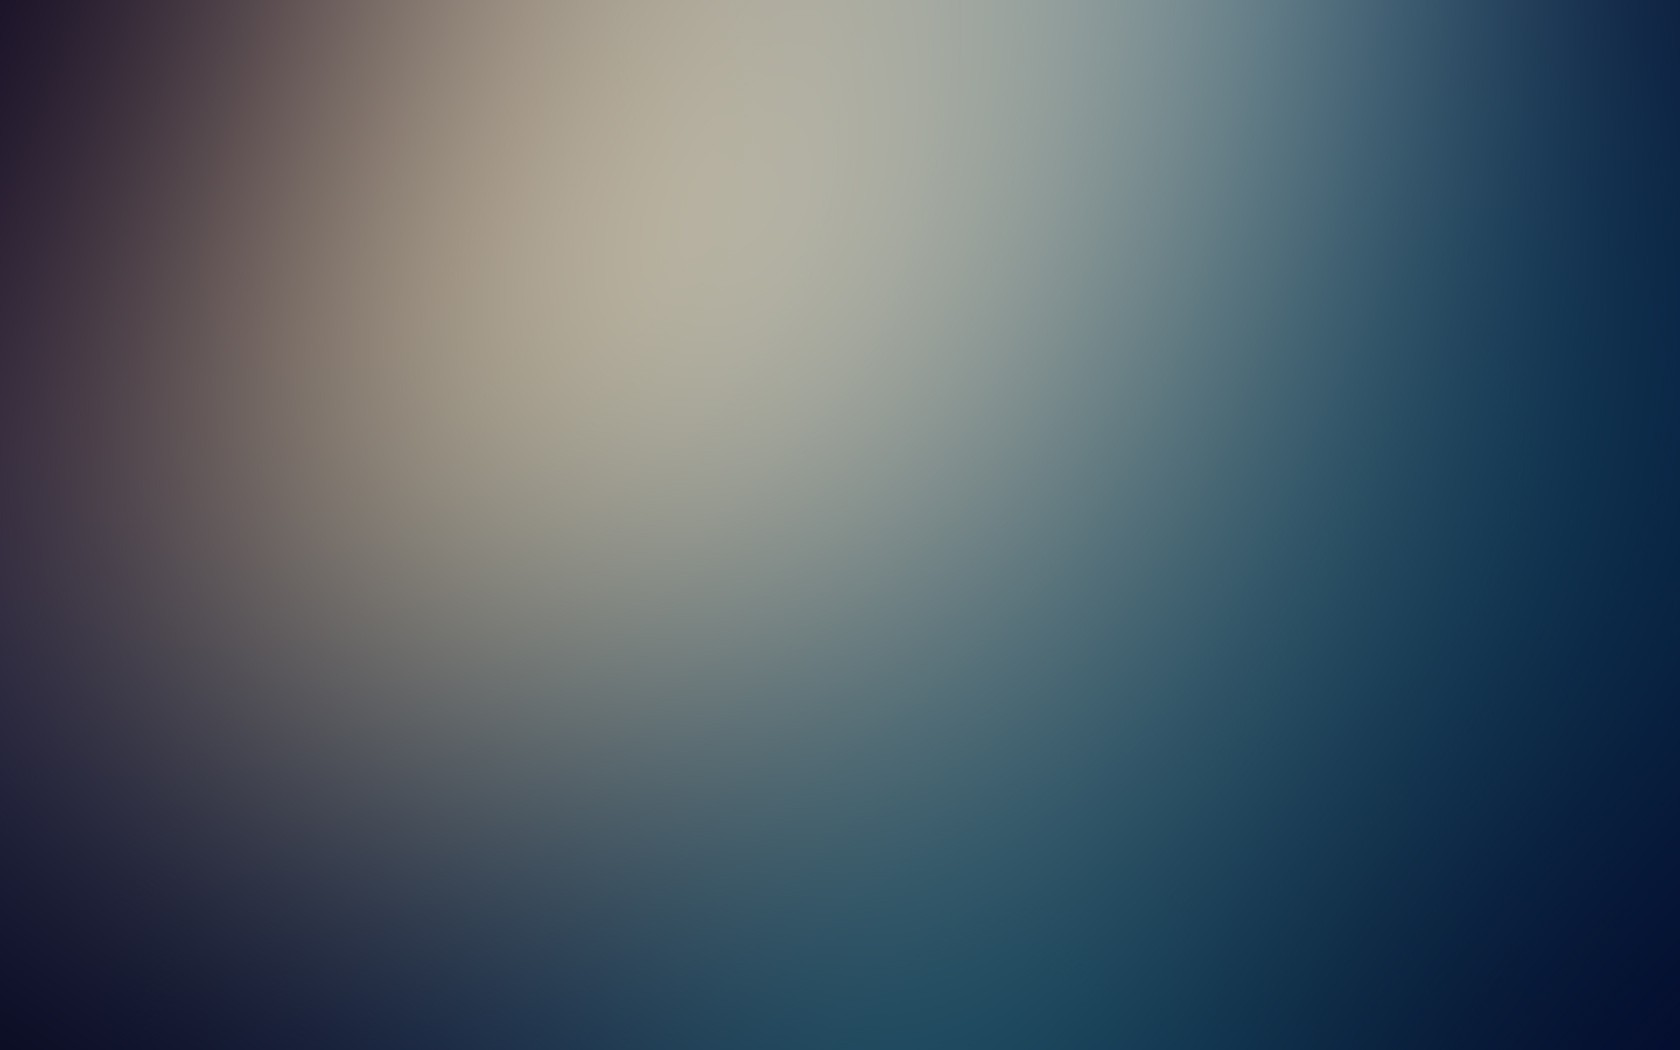 General 1680x1050 minimalism gradient blurred texture